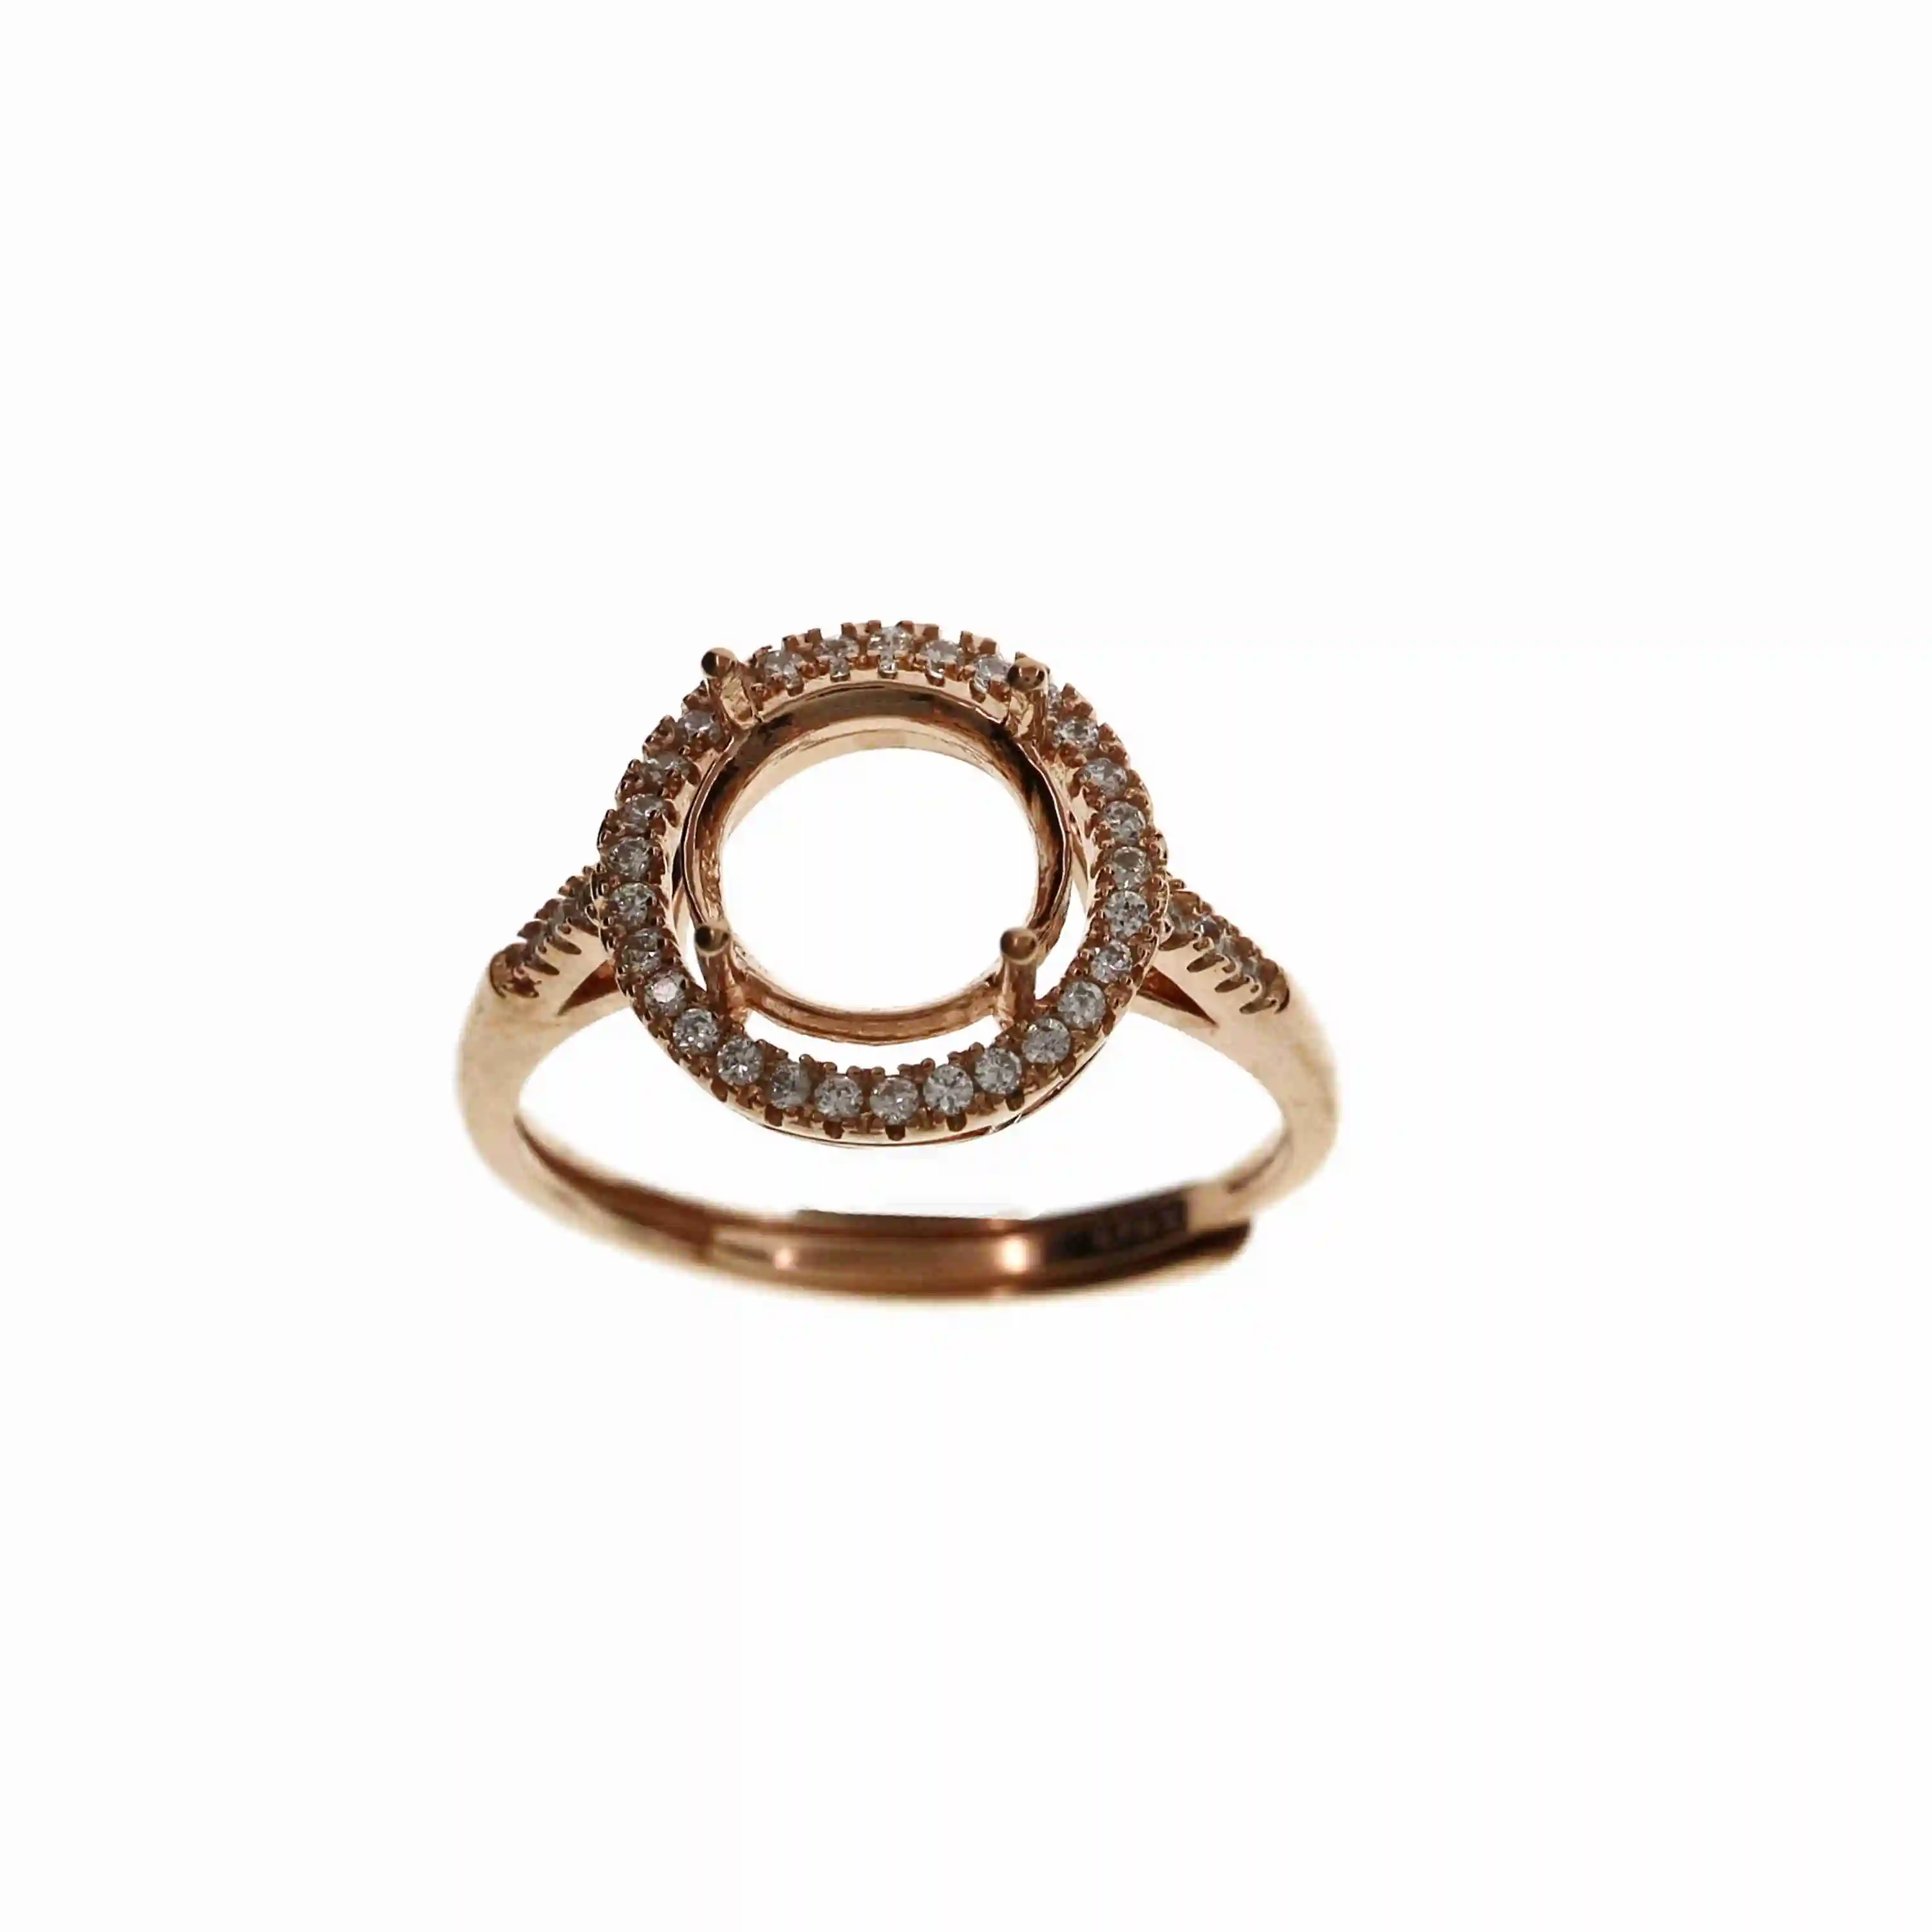 6-10MM ronda de oro rosa de plata Joyas CZ piedra puntas bisel sólida plata de ley 925 anillo ajustable configuración 1210031 5